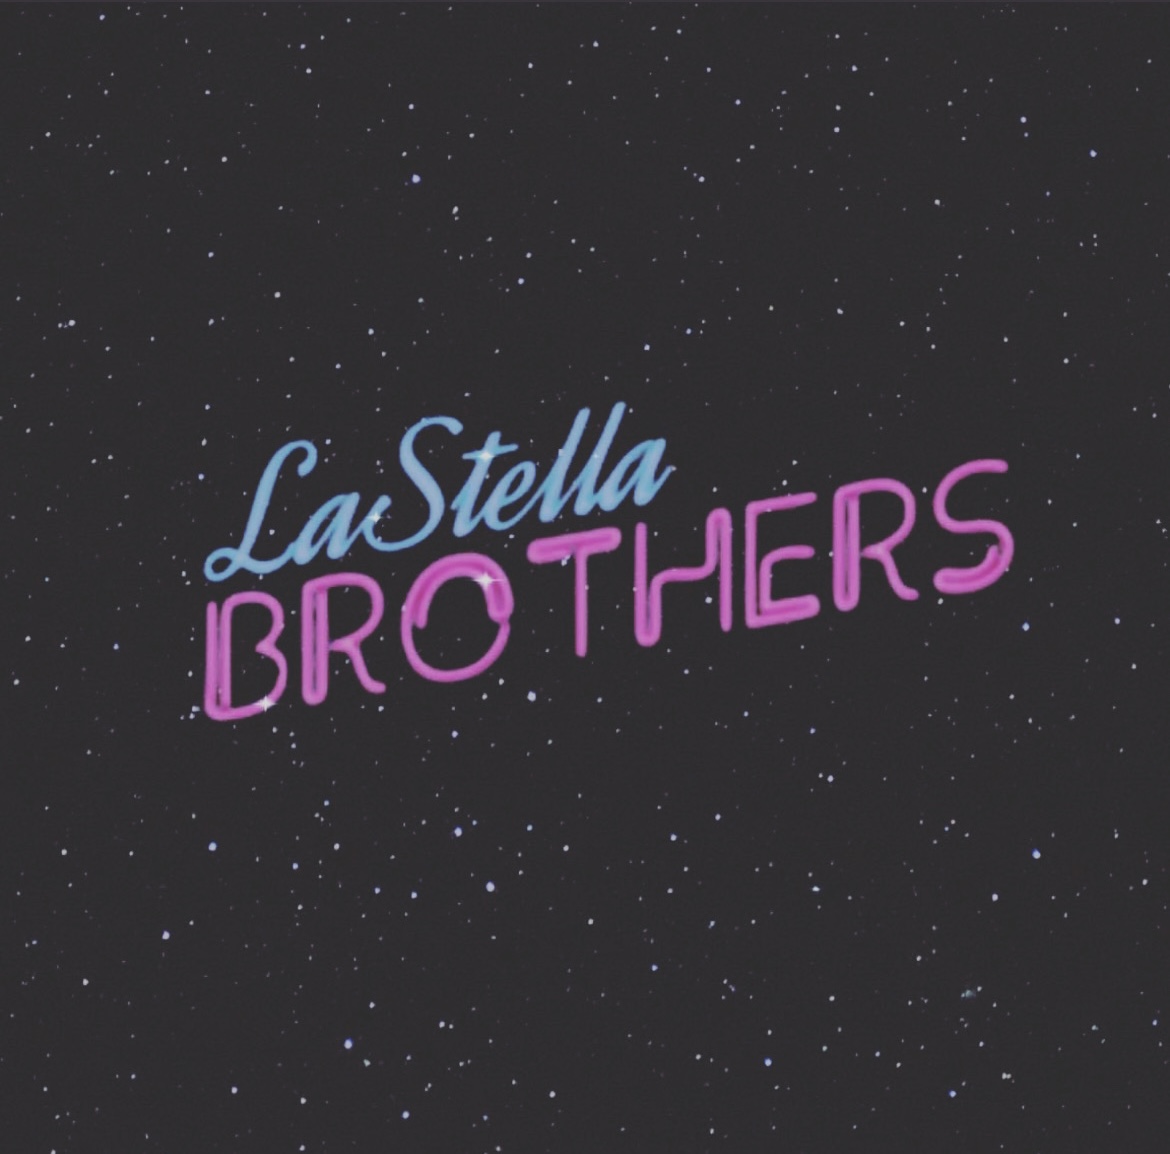 La Stella Brothers